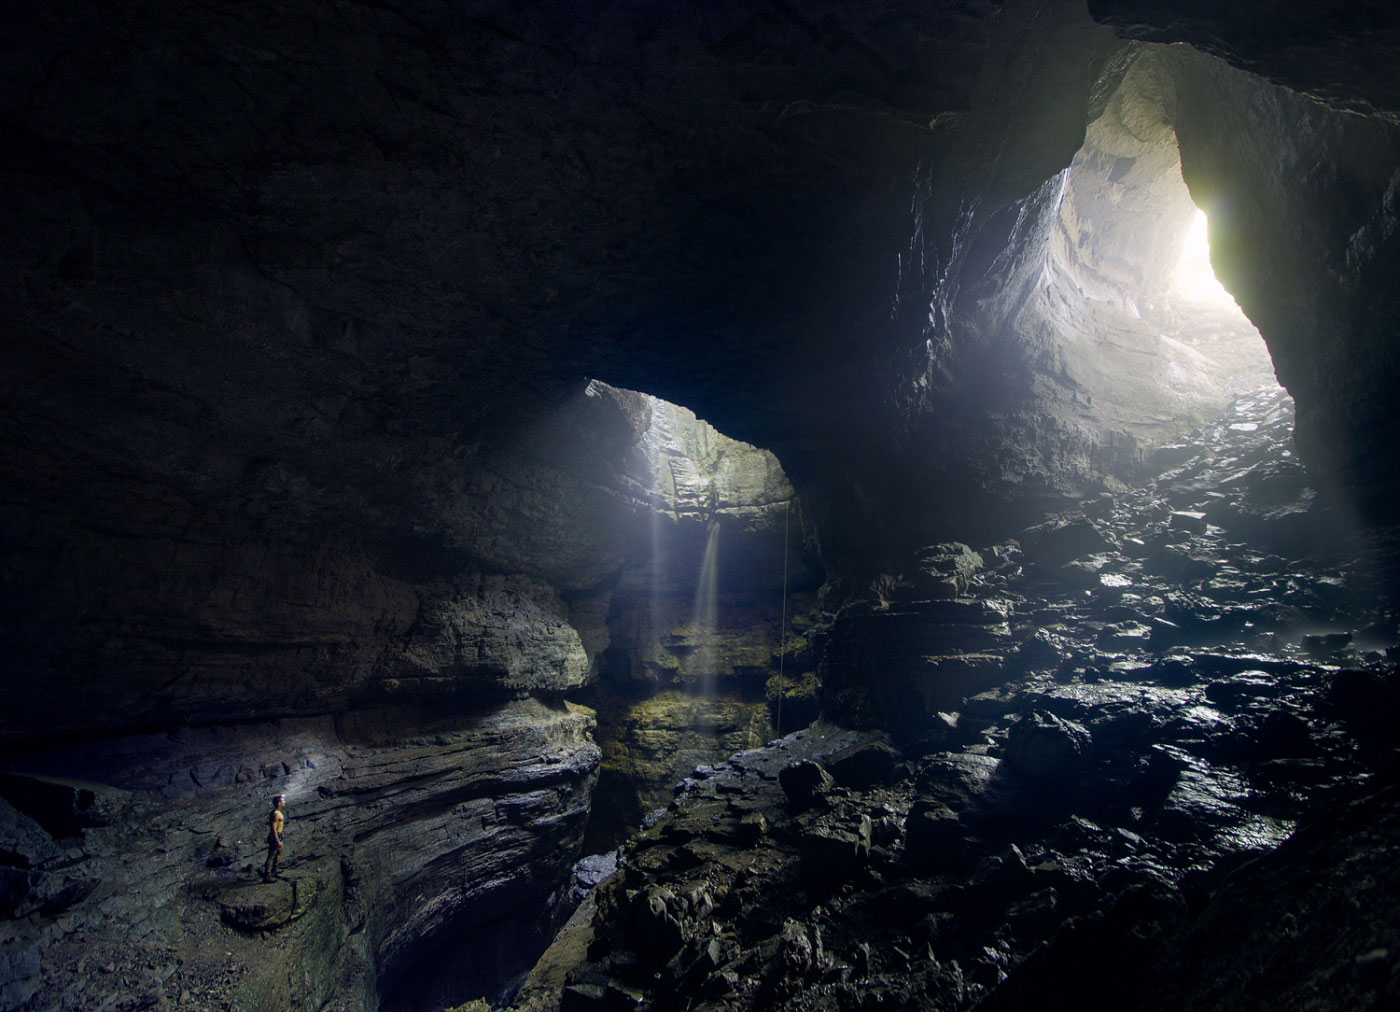 Hike Stephen's Gap in Stephens Gap Callahan Cave Preserve, Alabama - Stav is Lost